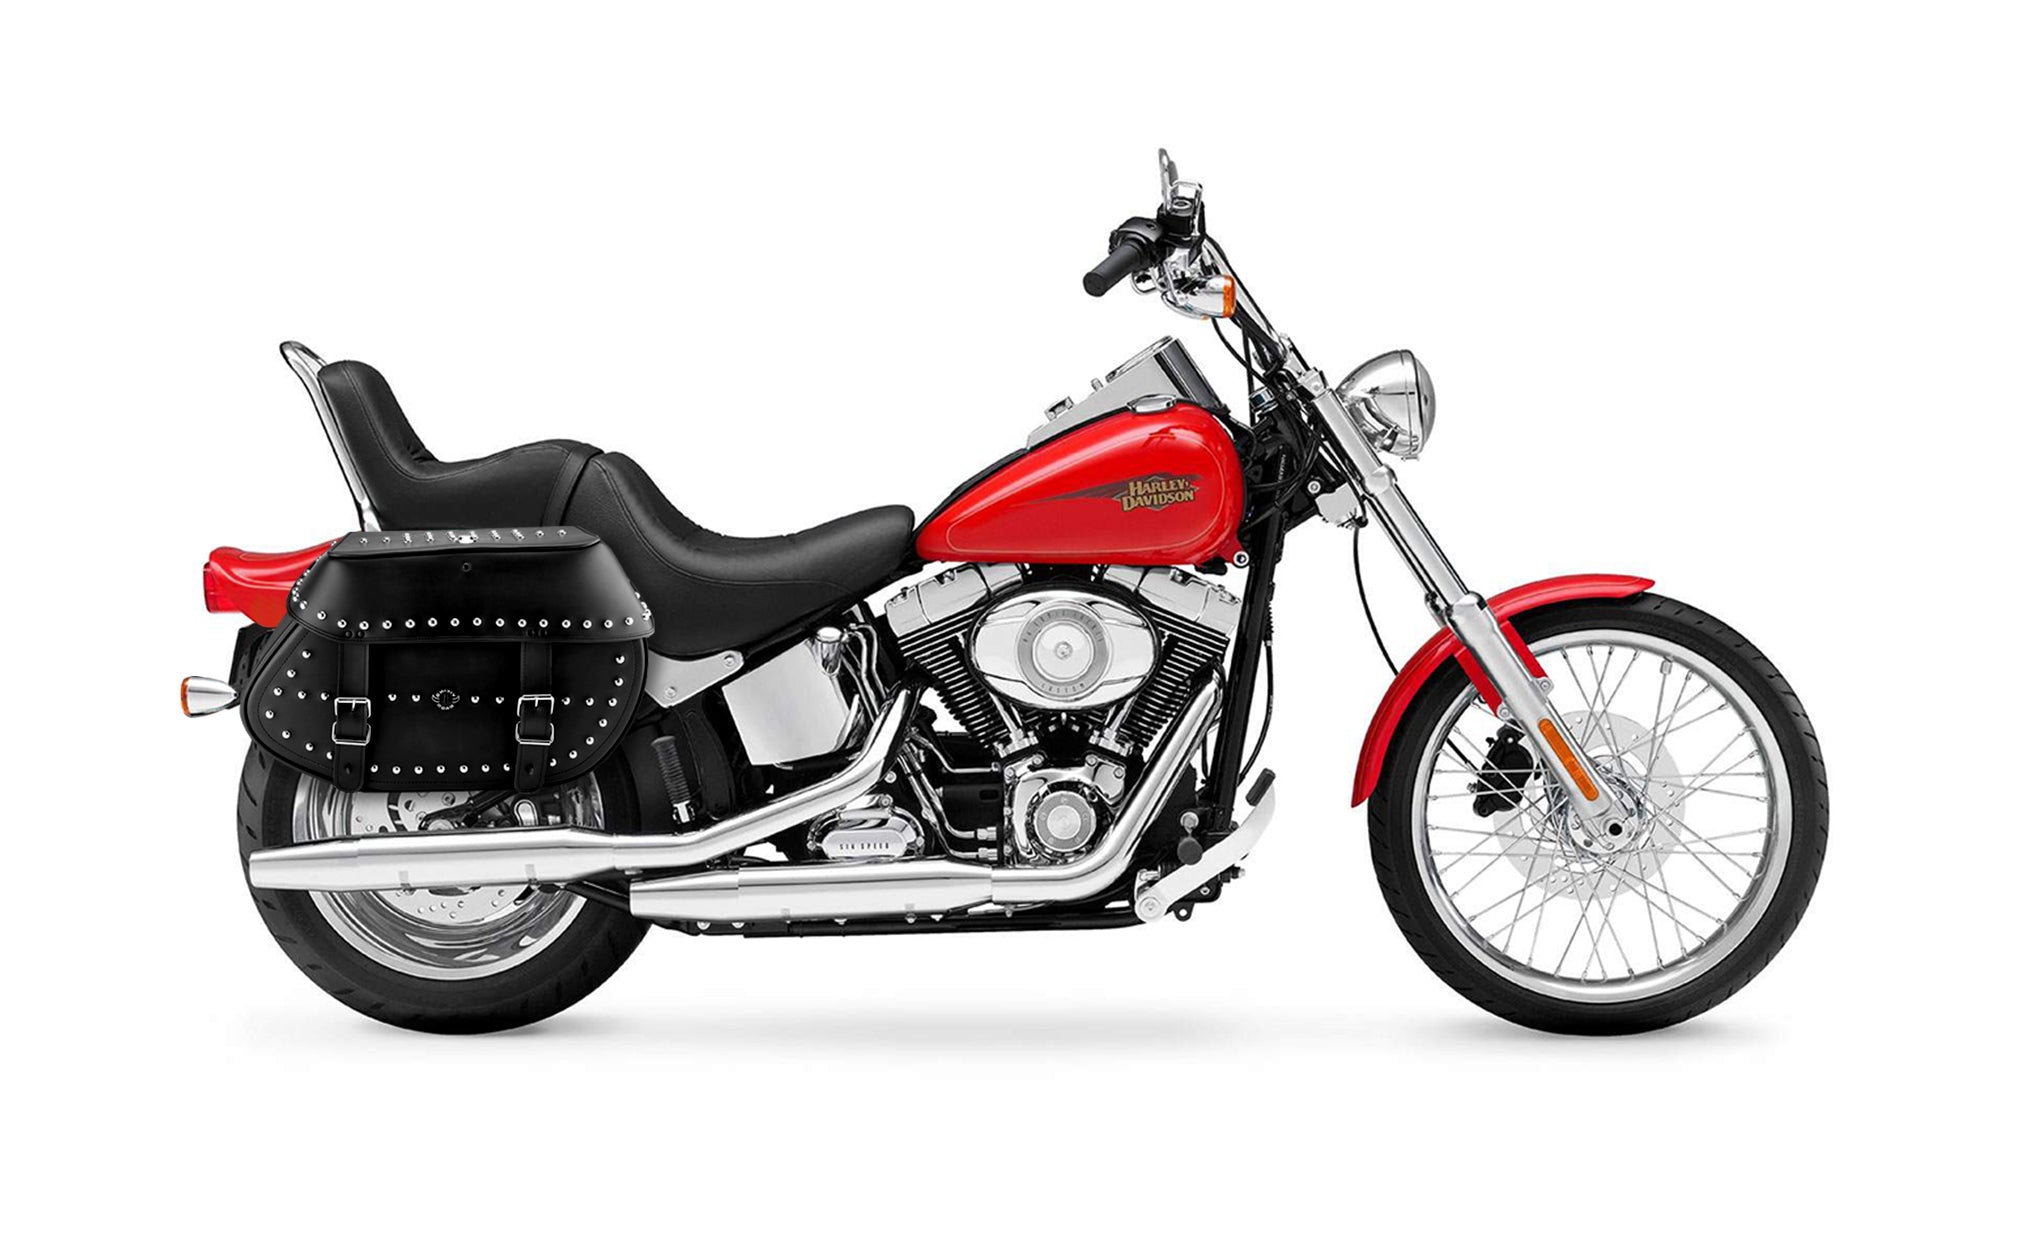 Viking Legacy Extra Large Studded Leather Motorcycle Saddlebags For Harley Softail Custom Fxstc on Bike Photo @expand